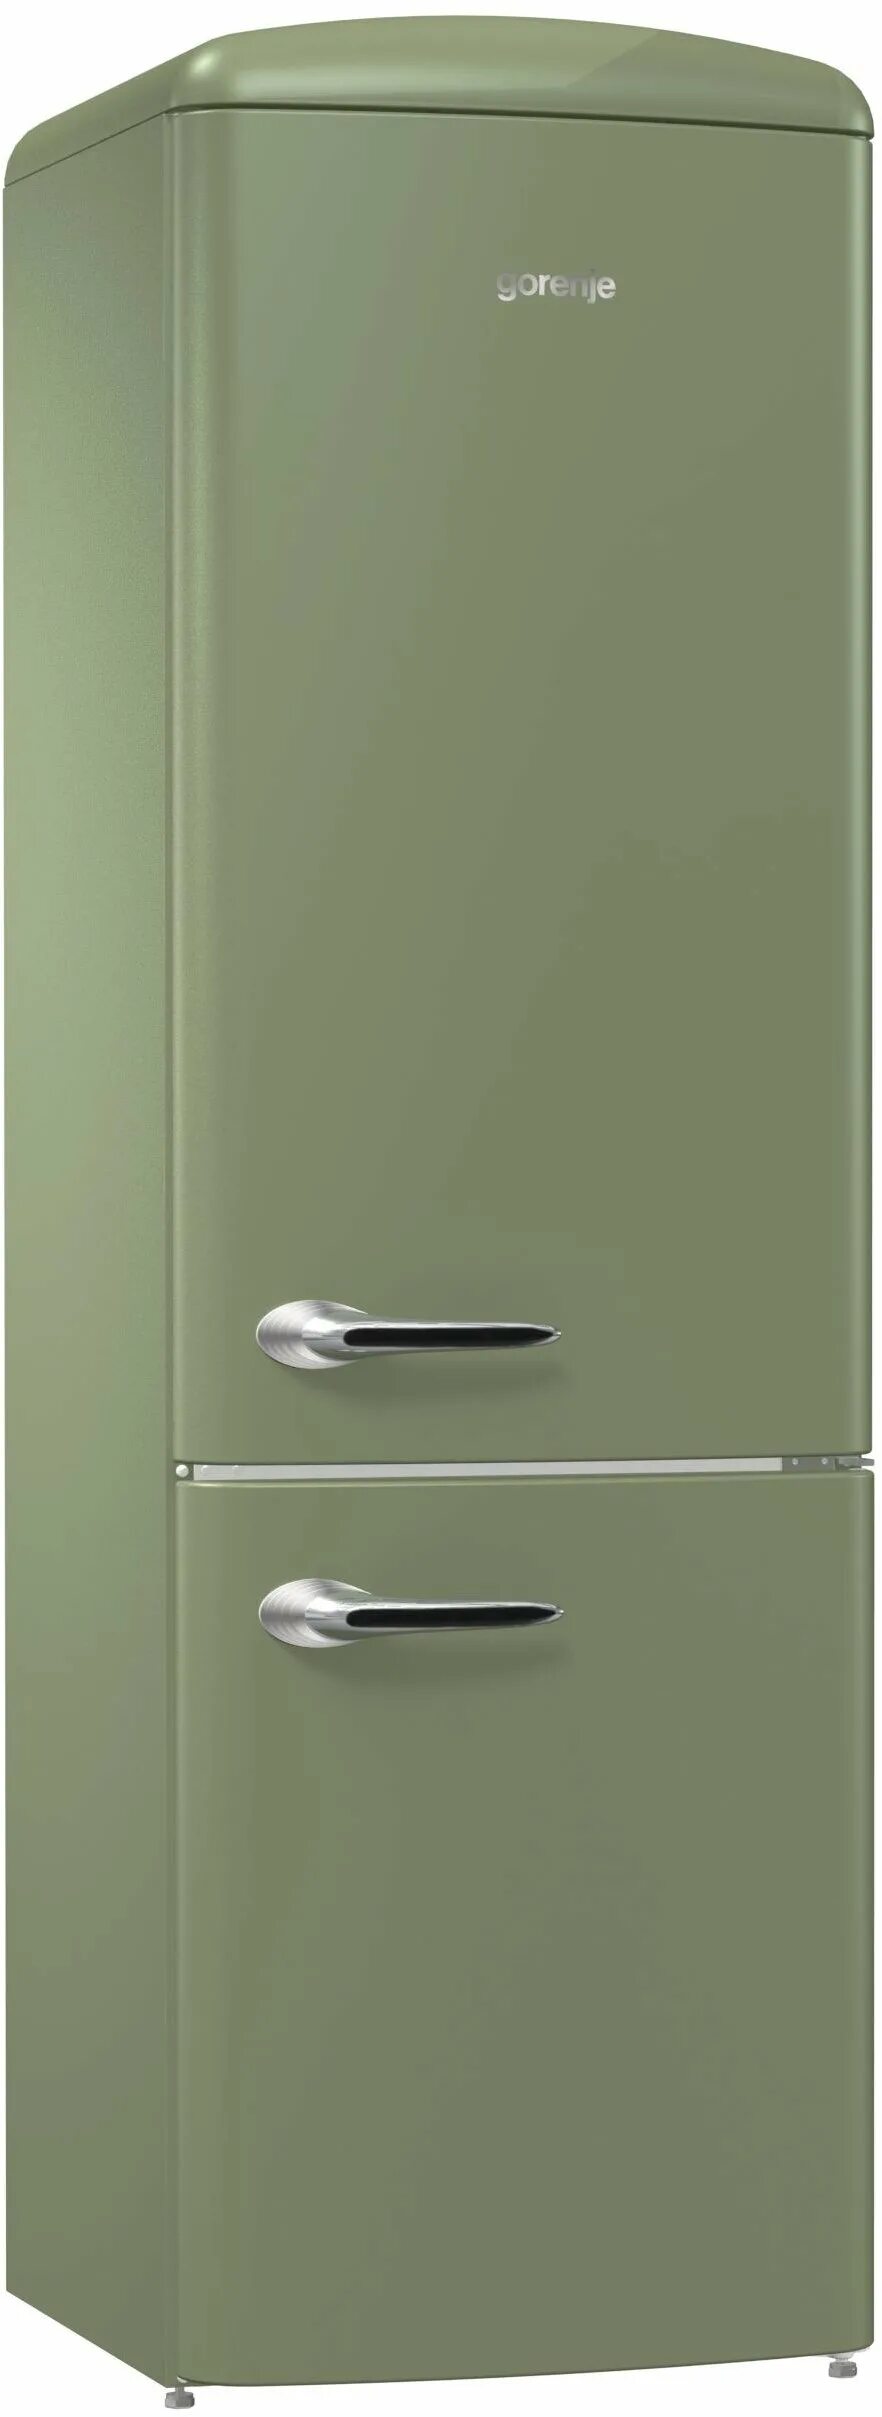 Двухкамерный холодильник Gorenje ork192ol. Холодильник Gorenje Ork 192 ol. Холодильник Gorenje Ork 192 Ch. Холодильник Gorenje Ork 192 r, красный. Горение холодильник москва